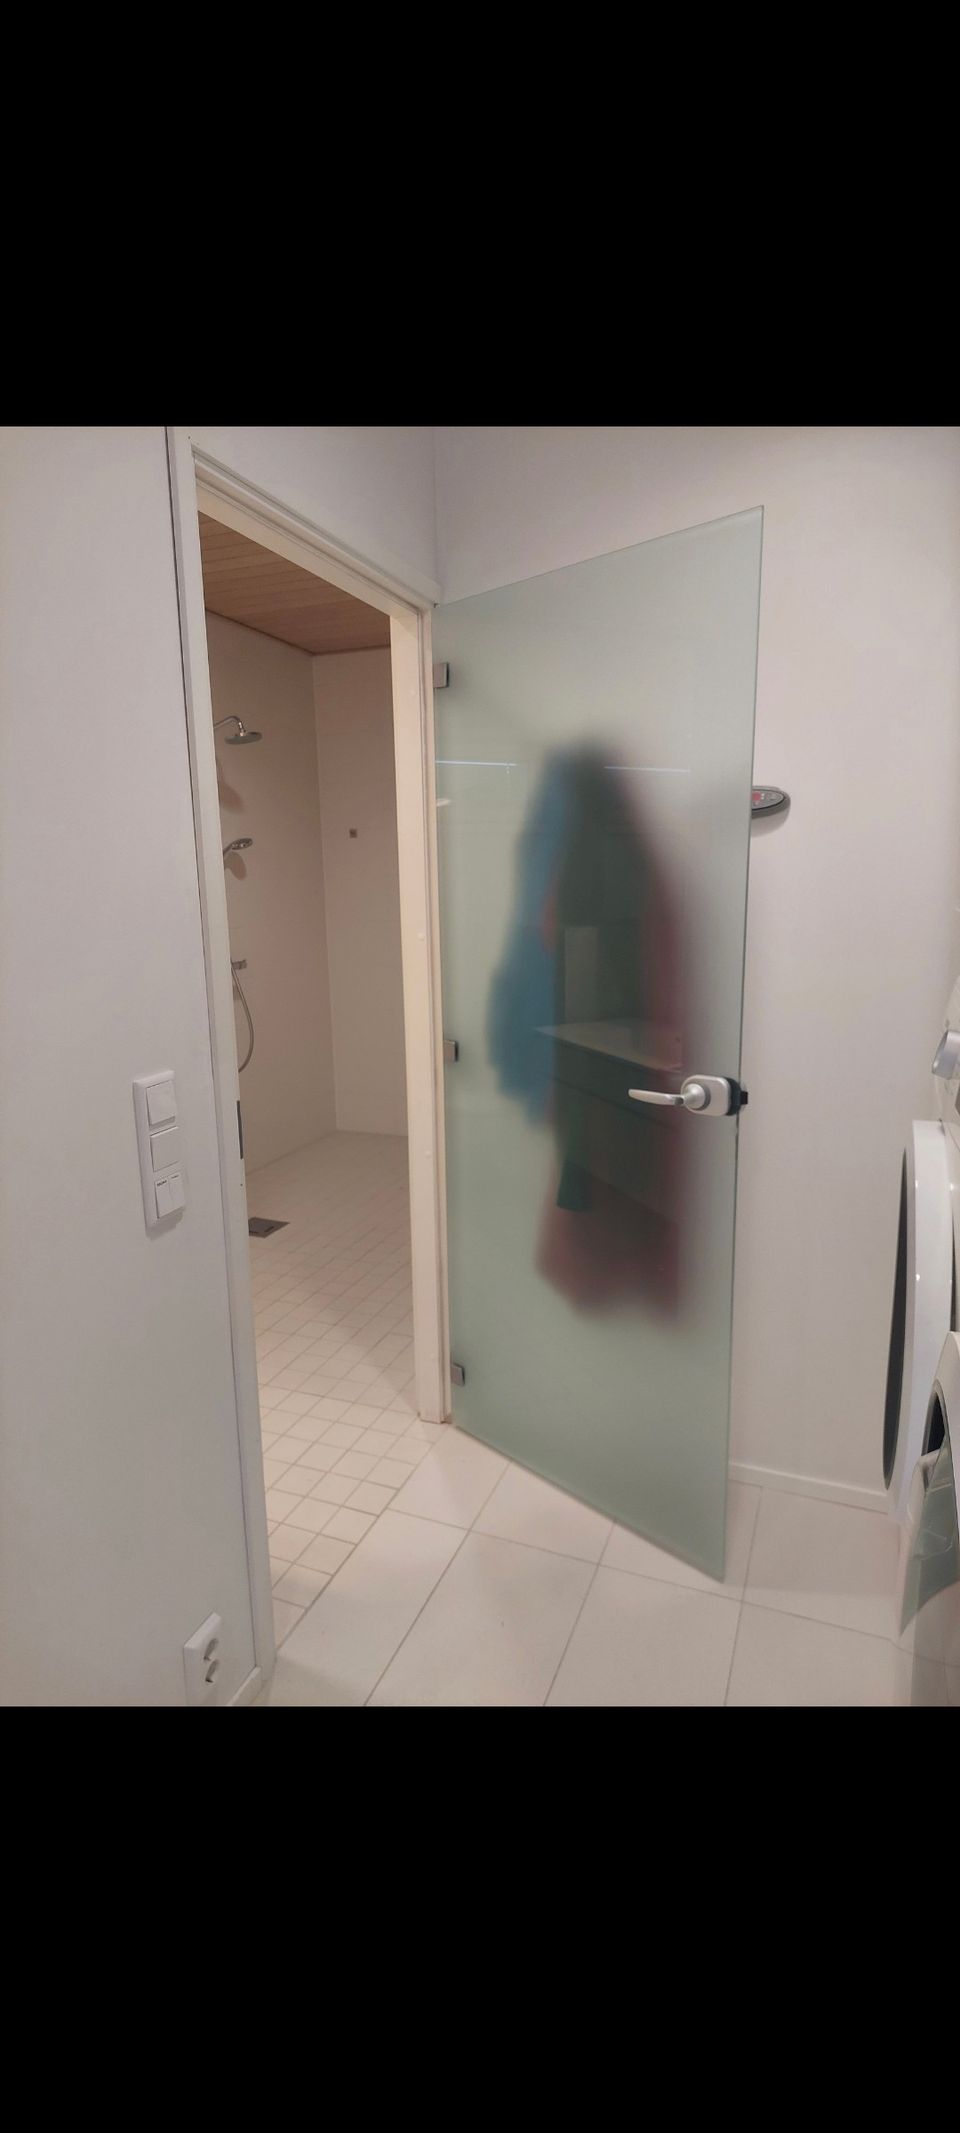 Kostean tilan ovi - lasi ovi kylpyhuone 80cm